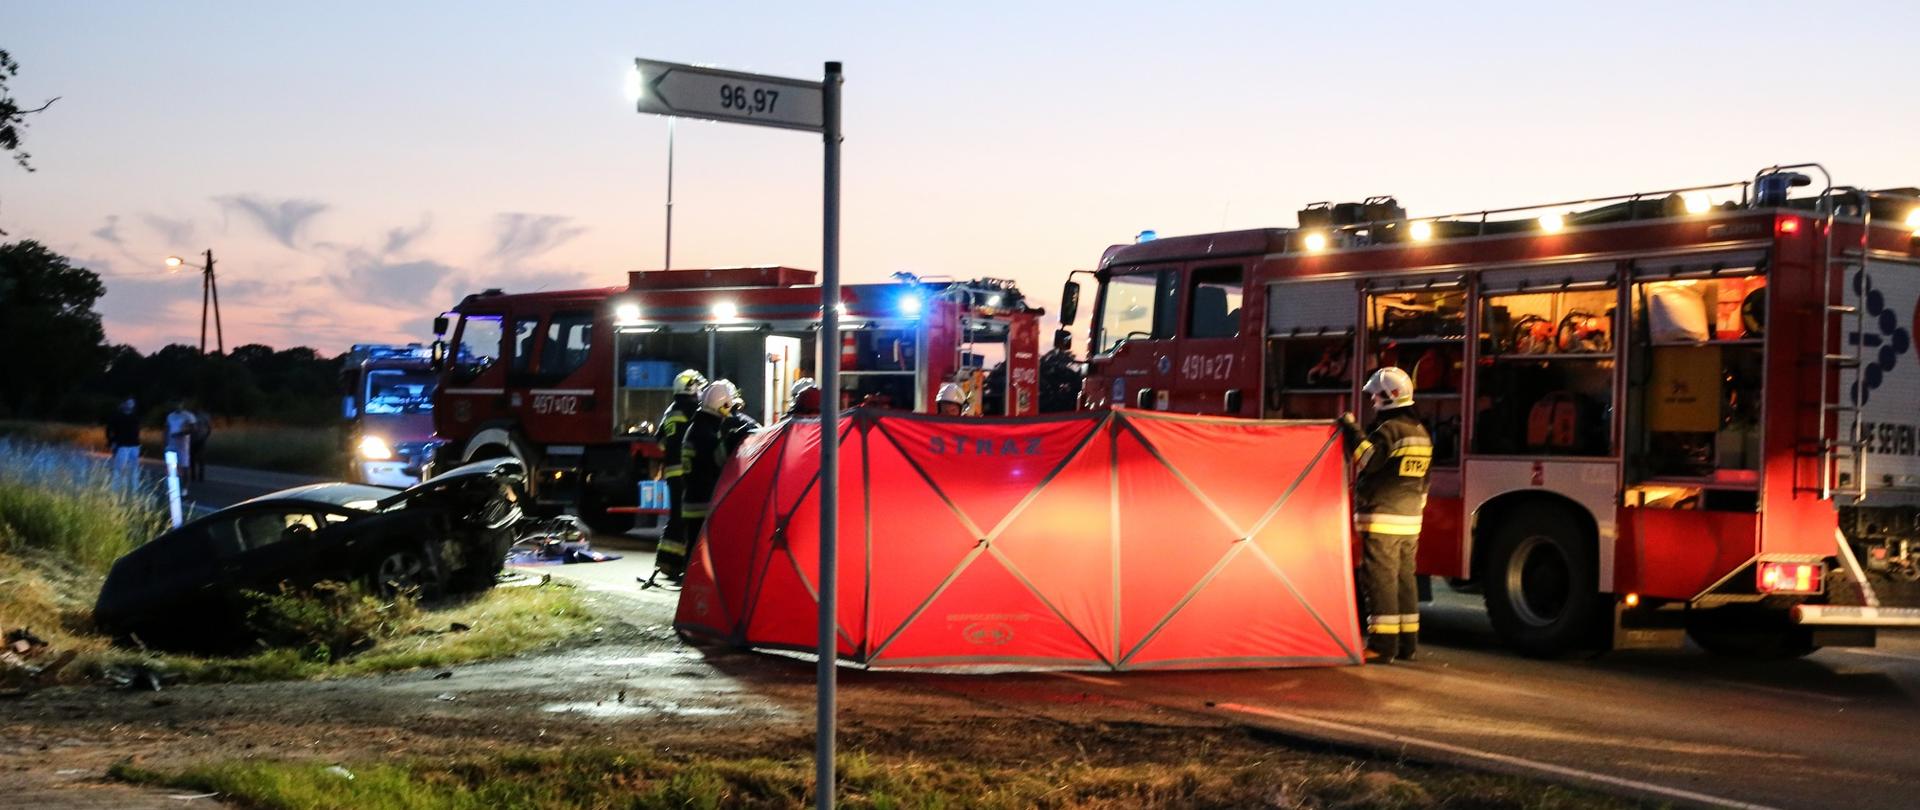 Zdjęcie przedstawia samochody pożarnicze stojące na drodze, parawan ratowniczy koloru czerwonego oraz rozbity pojazd biorący udziała w zdarzeniu. Przy wozach strażackich stoją strażacy w umundurowaniu bojowym.